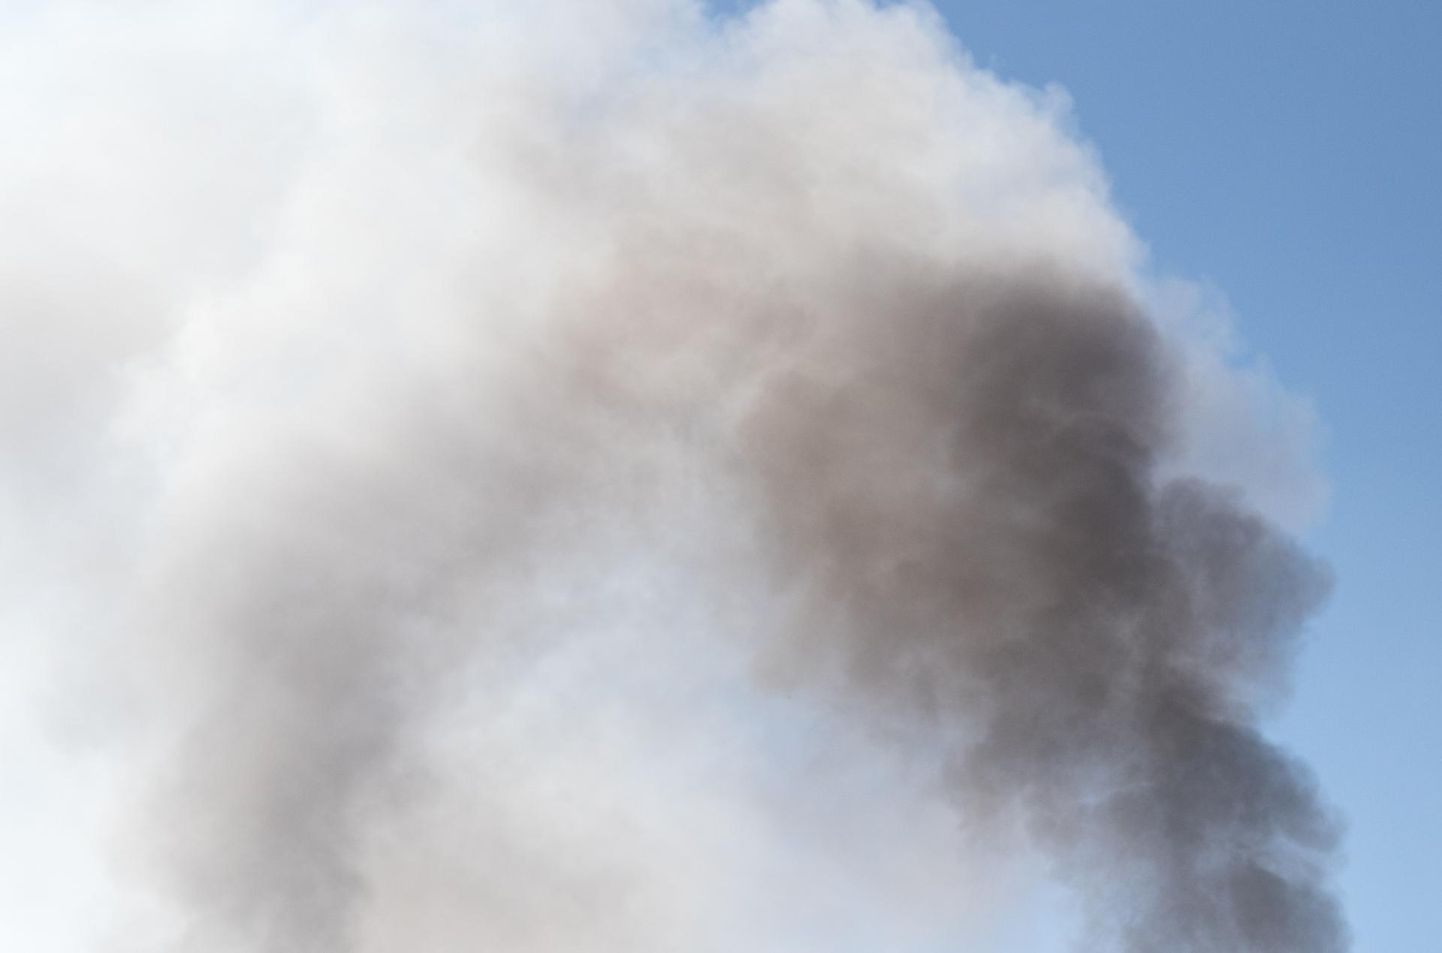 Ebasobiva materjali põletamisel tekkiv suits võib häirida kaaslinlasi.